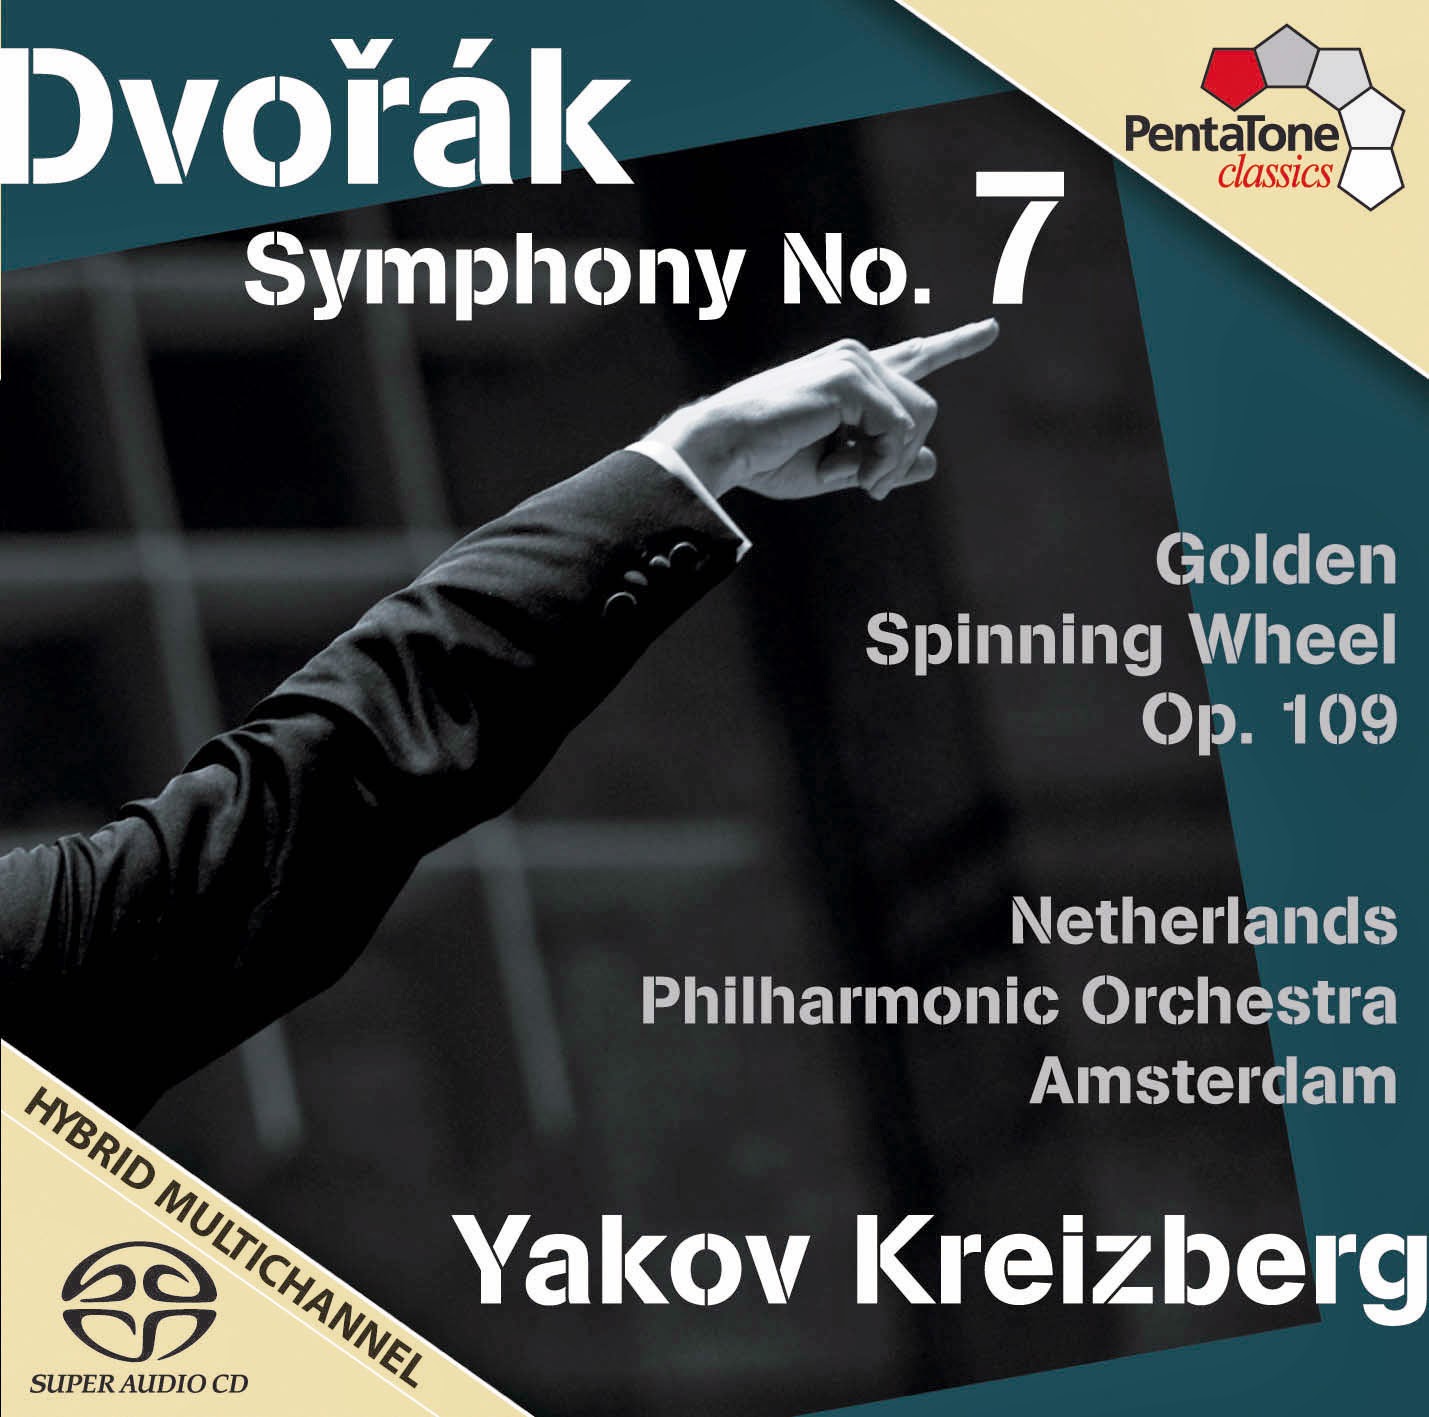 Yakov Kreizberg, Netherlands Philharmonic Orchestra Amsterdam - Dvorak: Symphony 7 & Zlaty kolovrat (2009) MCH SACD ISO + FLAC 24bit/96kHz